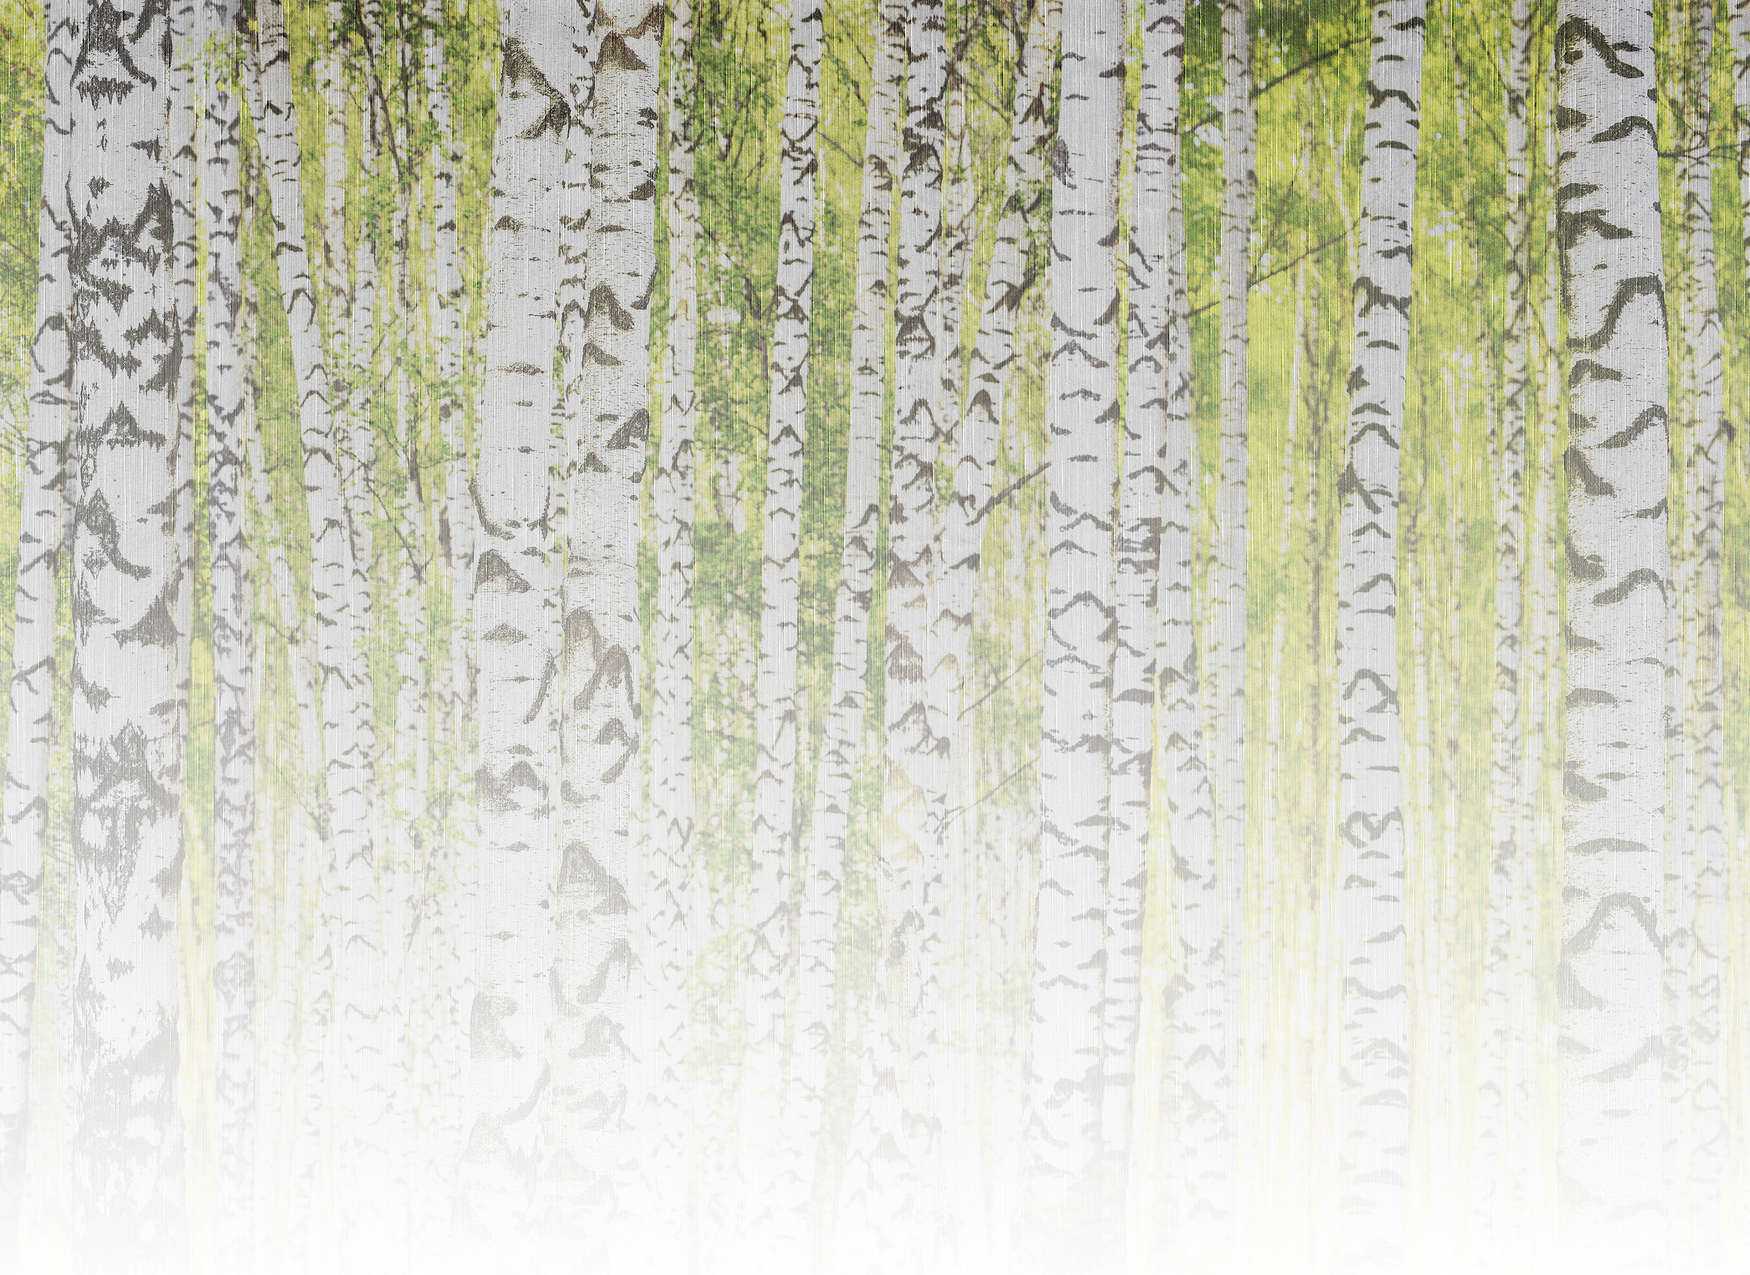             Fotomurali con foresta di betulle in look texture lino - verde, bianco, nero
        